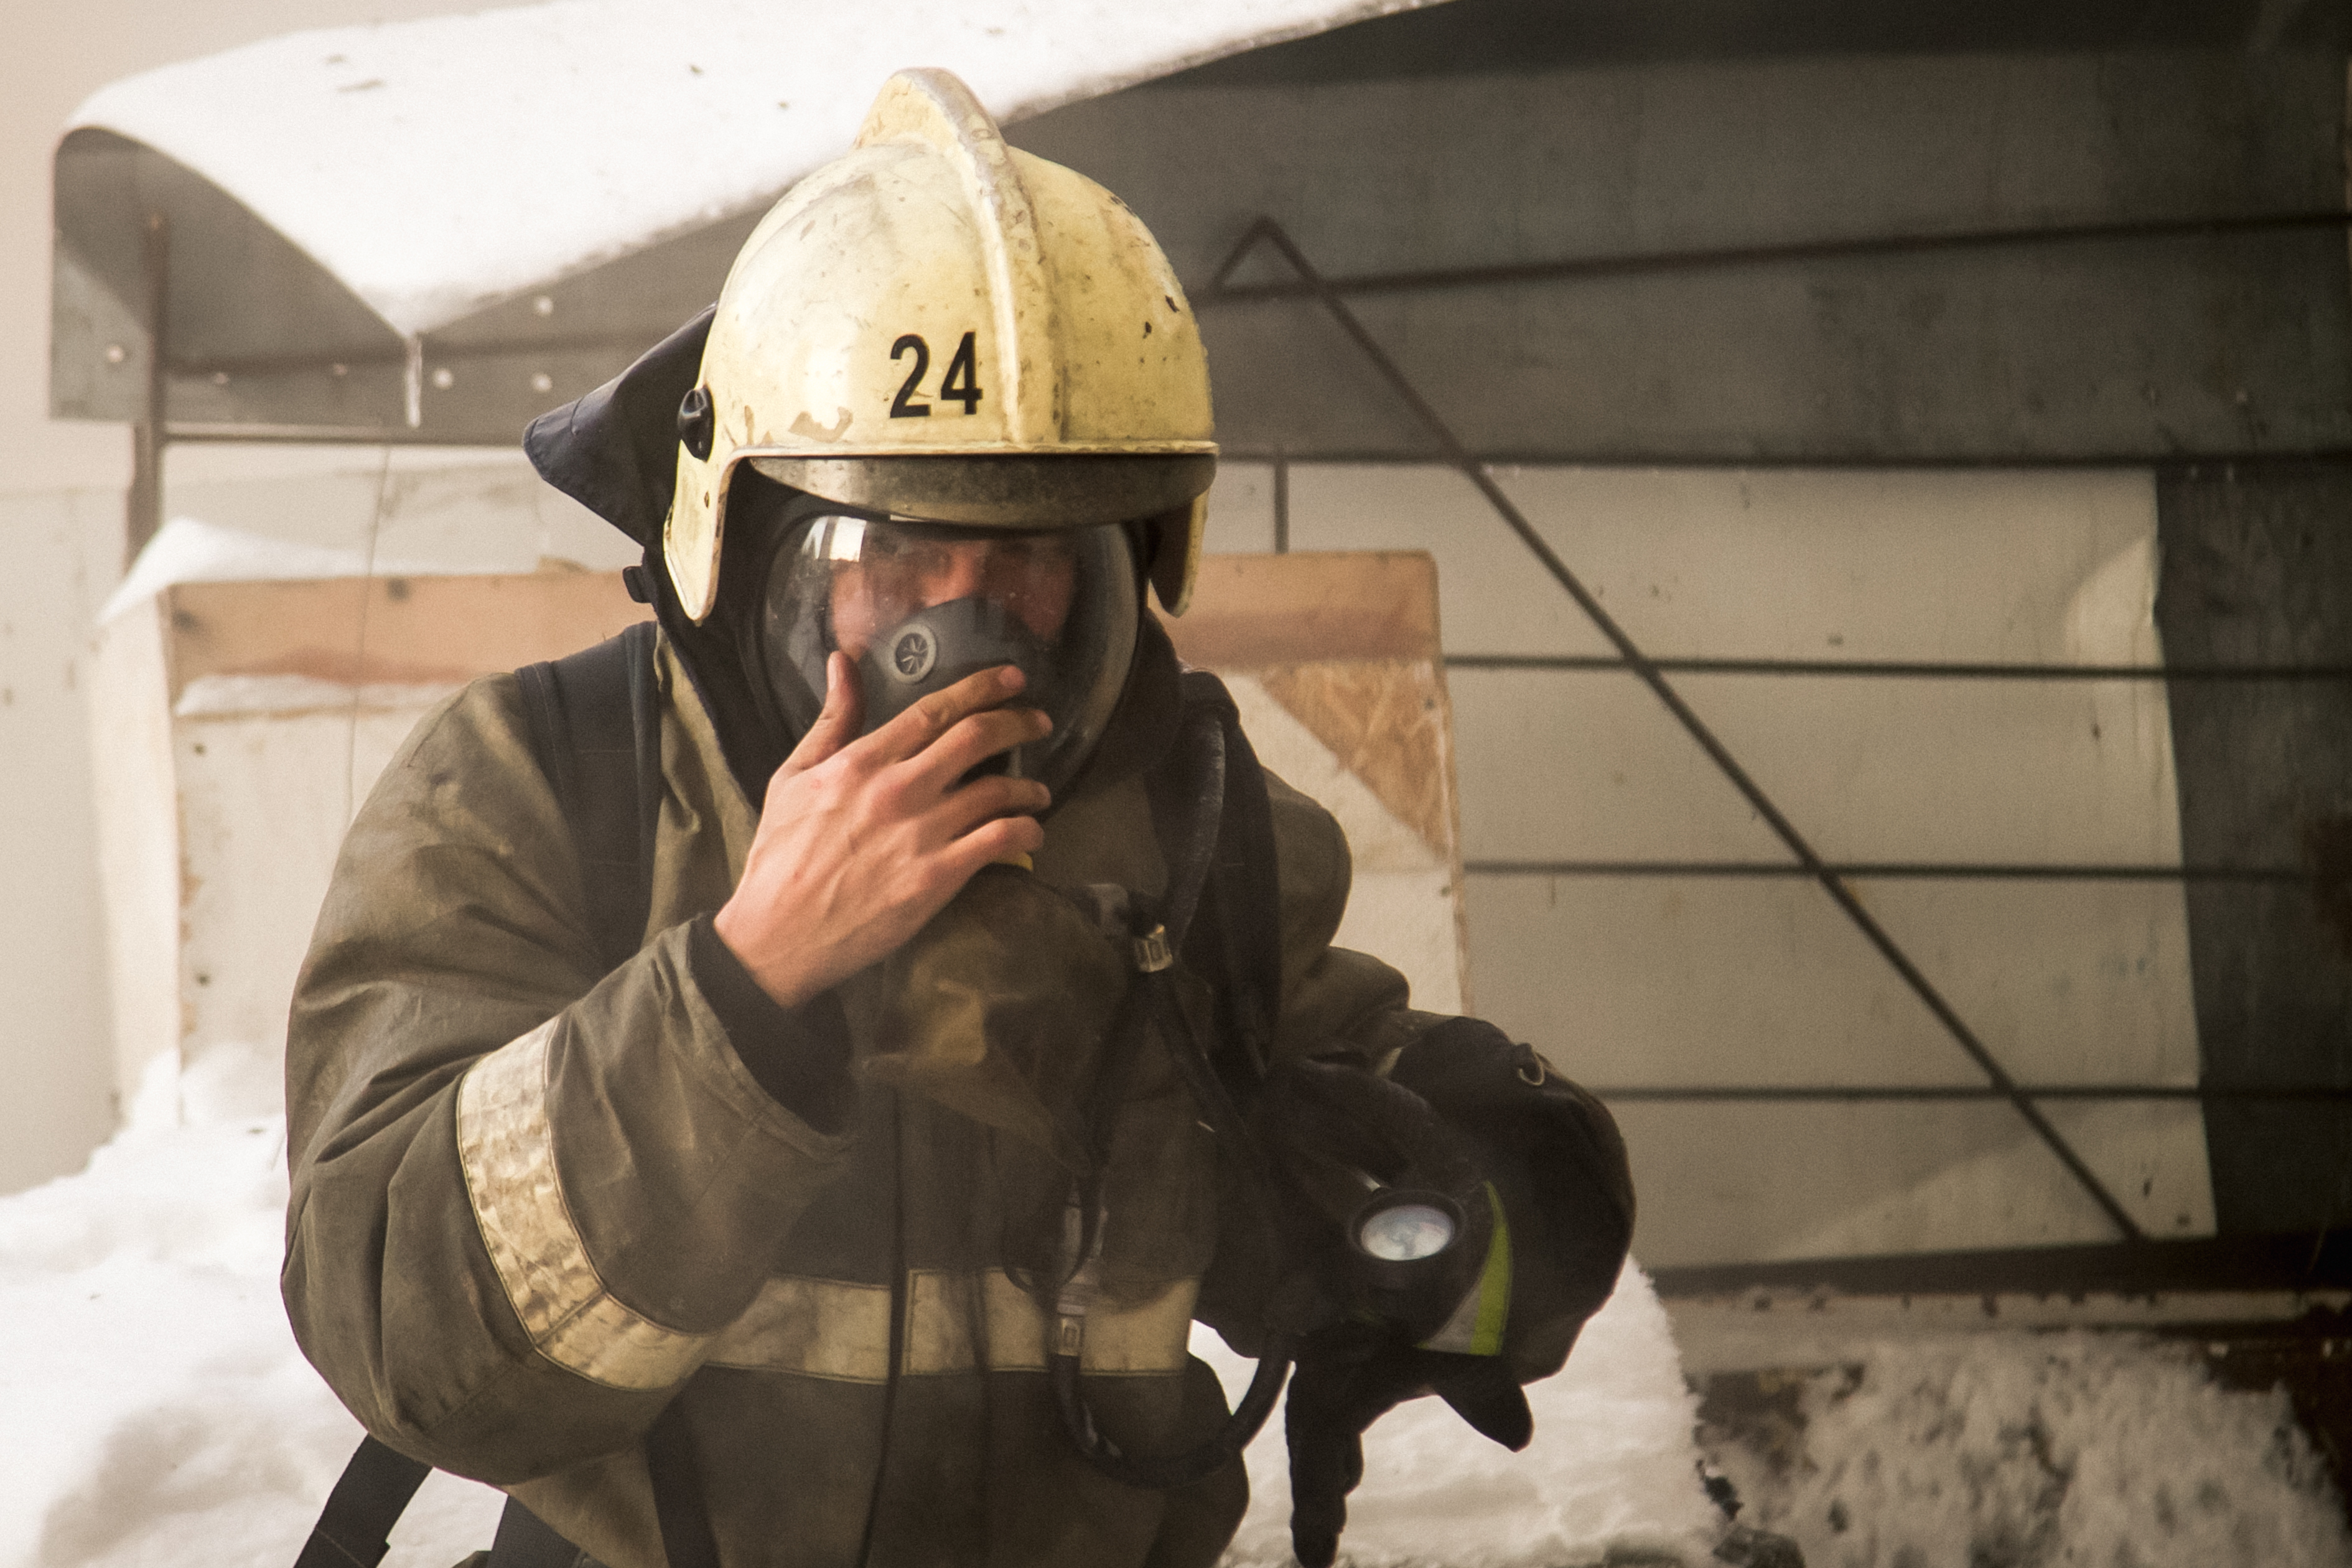 Пожар в омской больнице устроил 28-летний пациент #Омск #Происшествия #Криминал